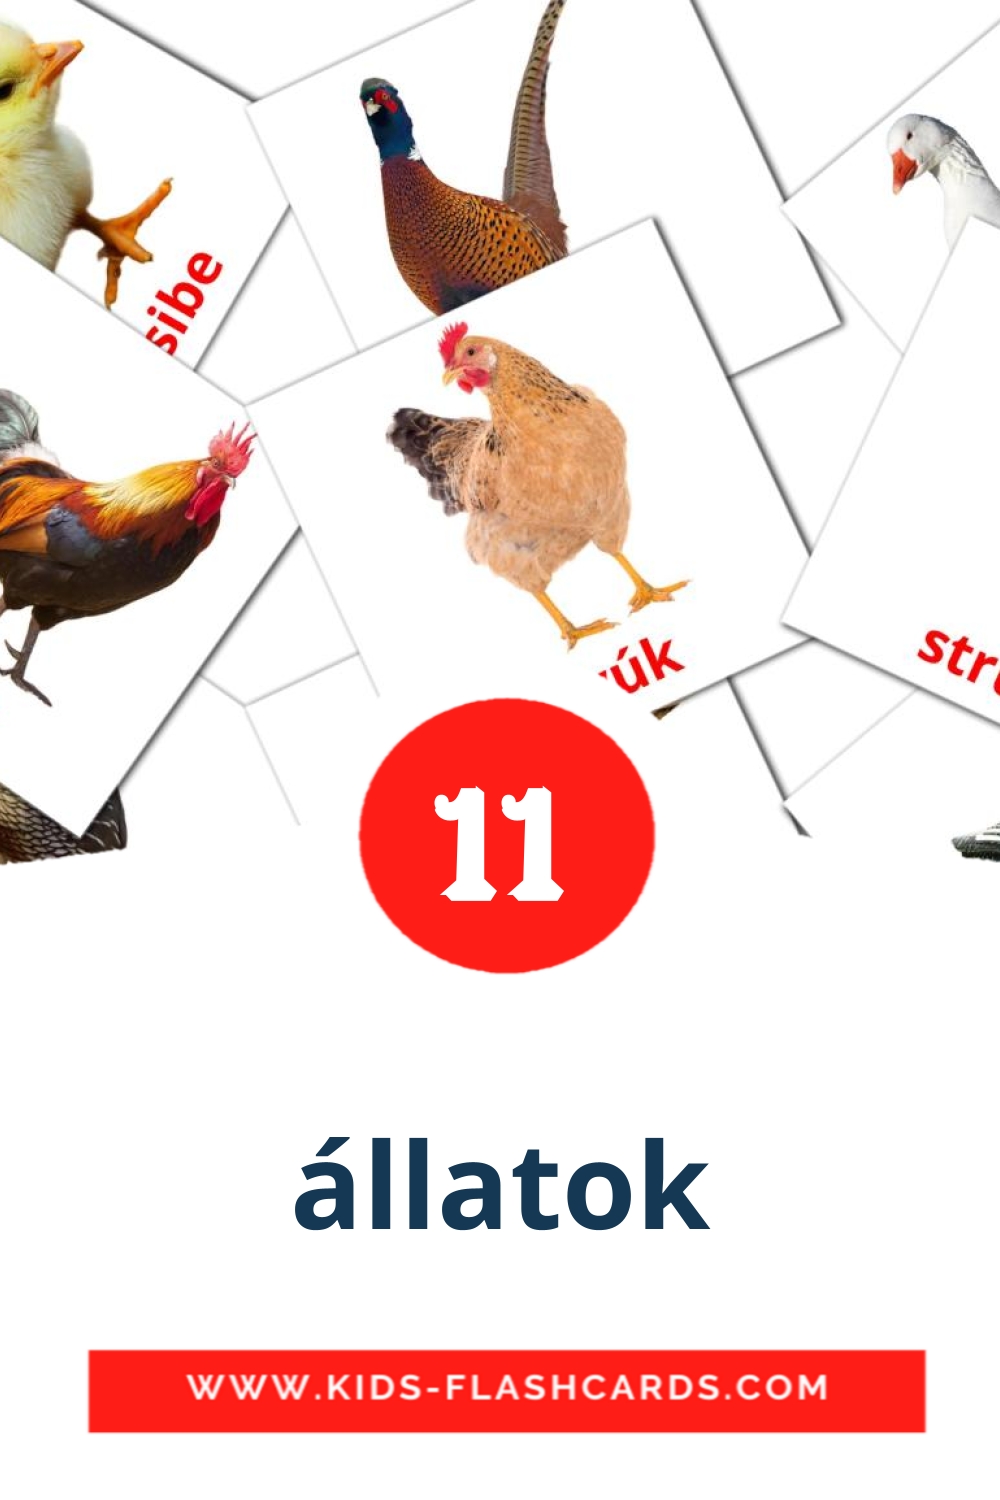 11 tarjetas didacticas de állatok para el jardín de infancia en amhárico